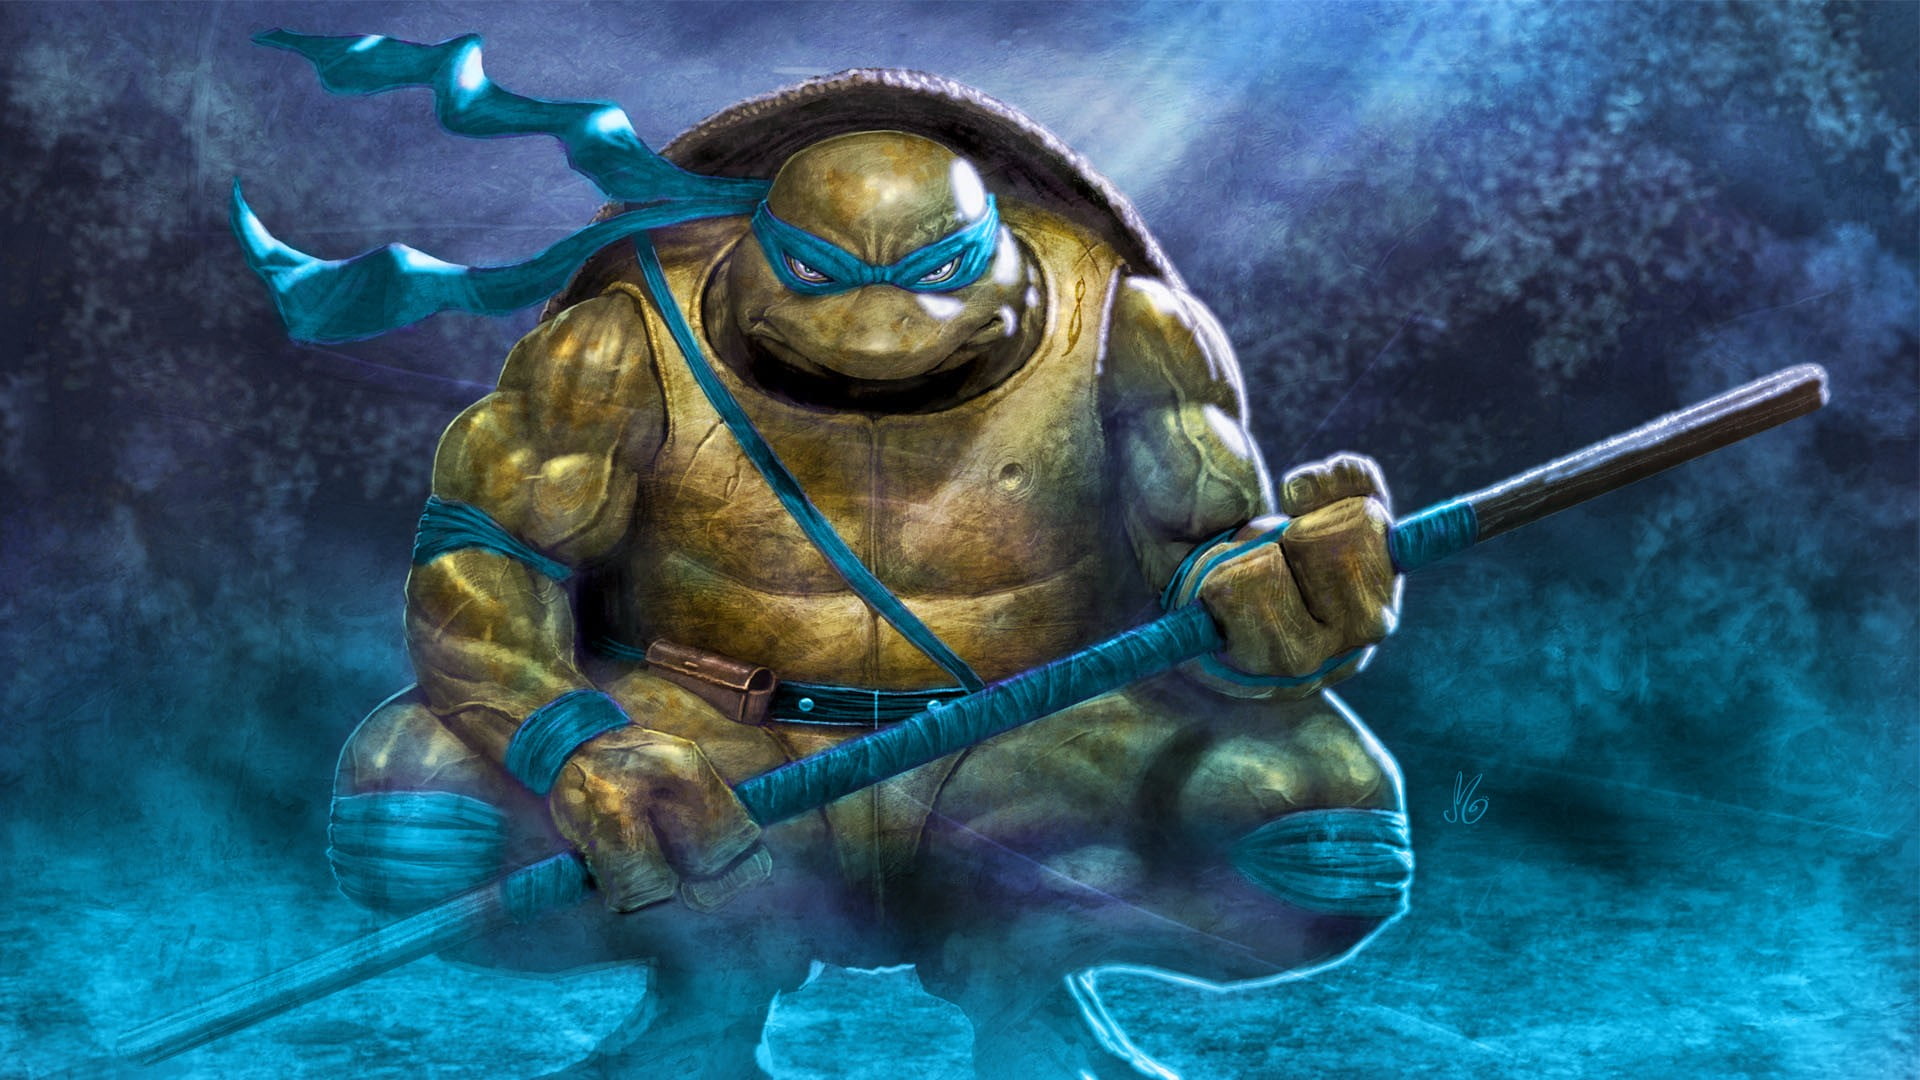 TMNT Leonardo digital wallpaper, Teenage Mutant Ninja Turtles, Leonardo HD ...